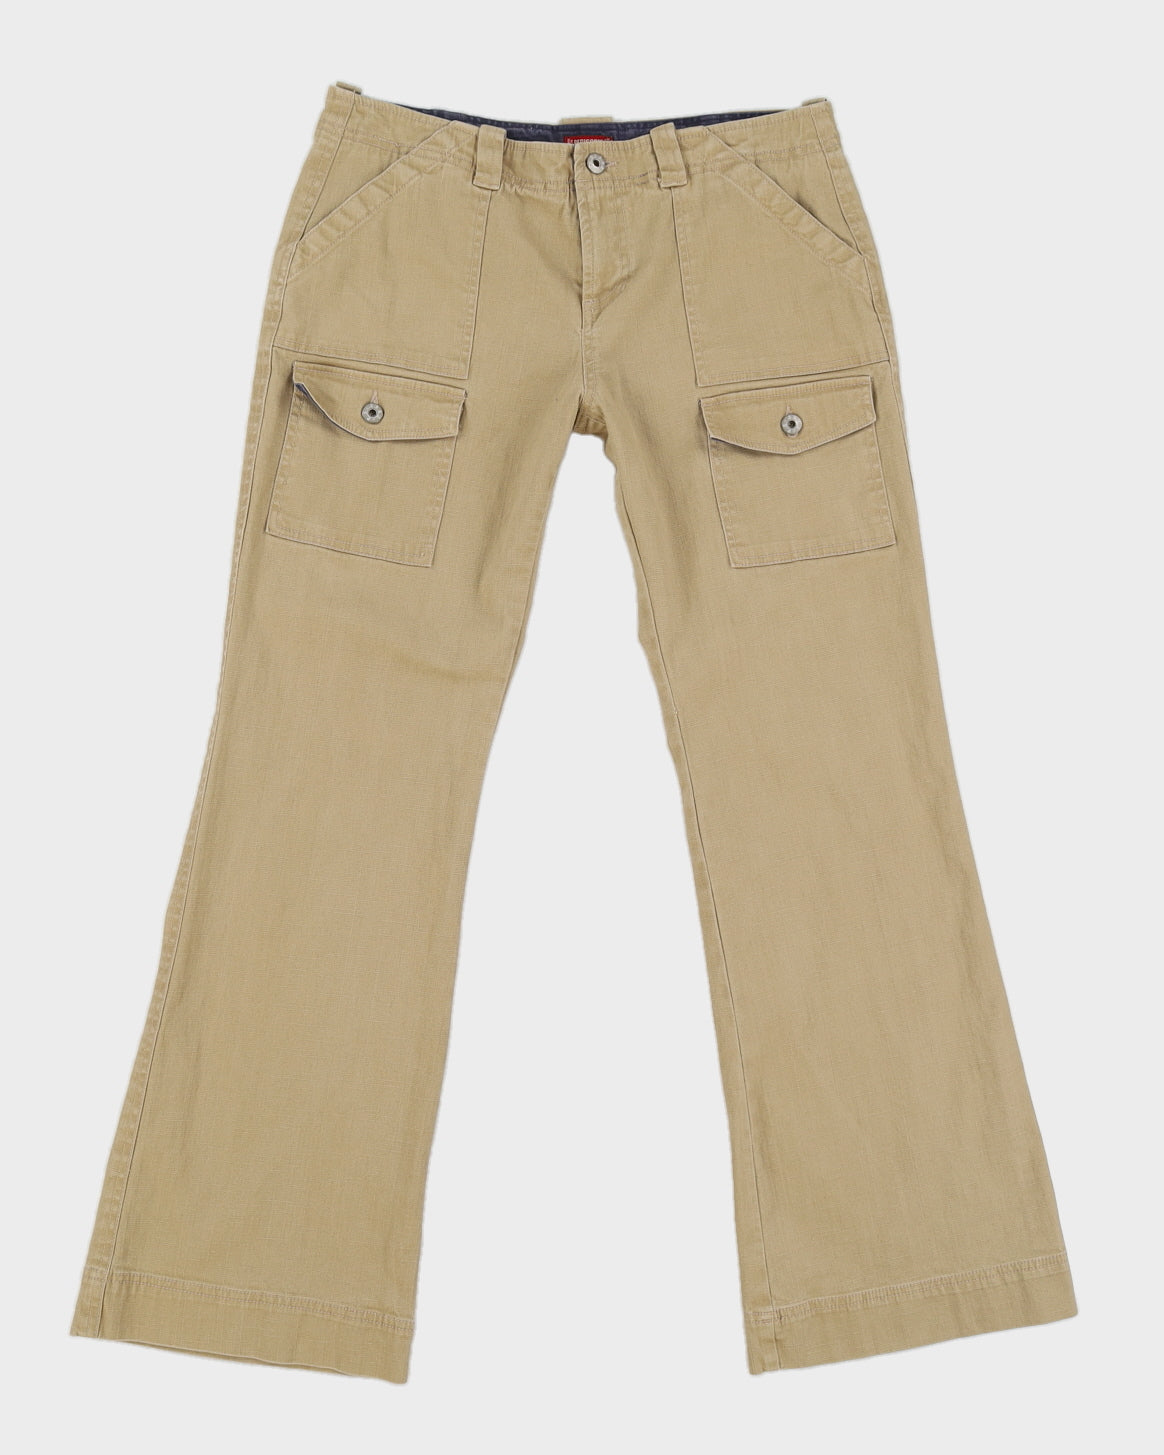 Y2K Beige Cargo Style Jeans - M